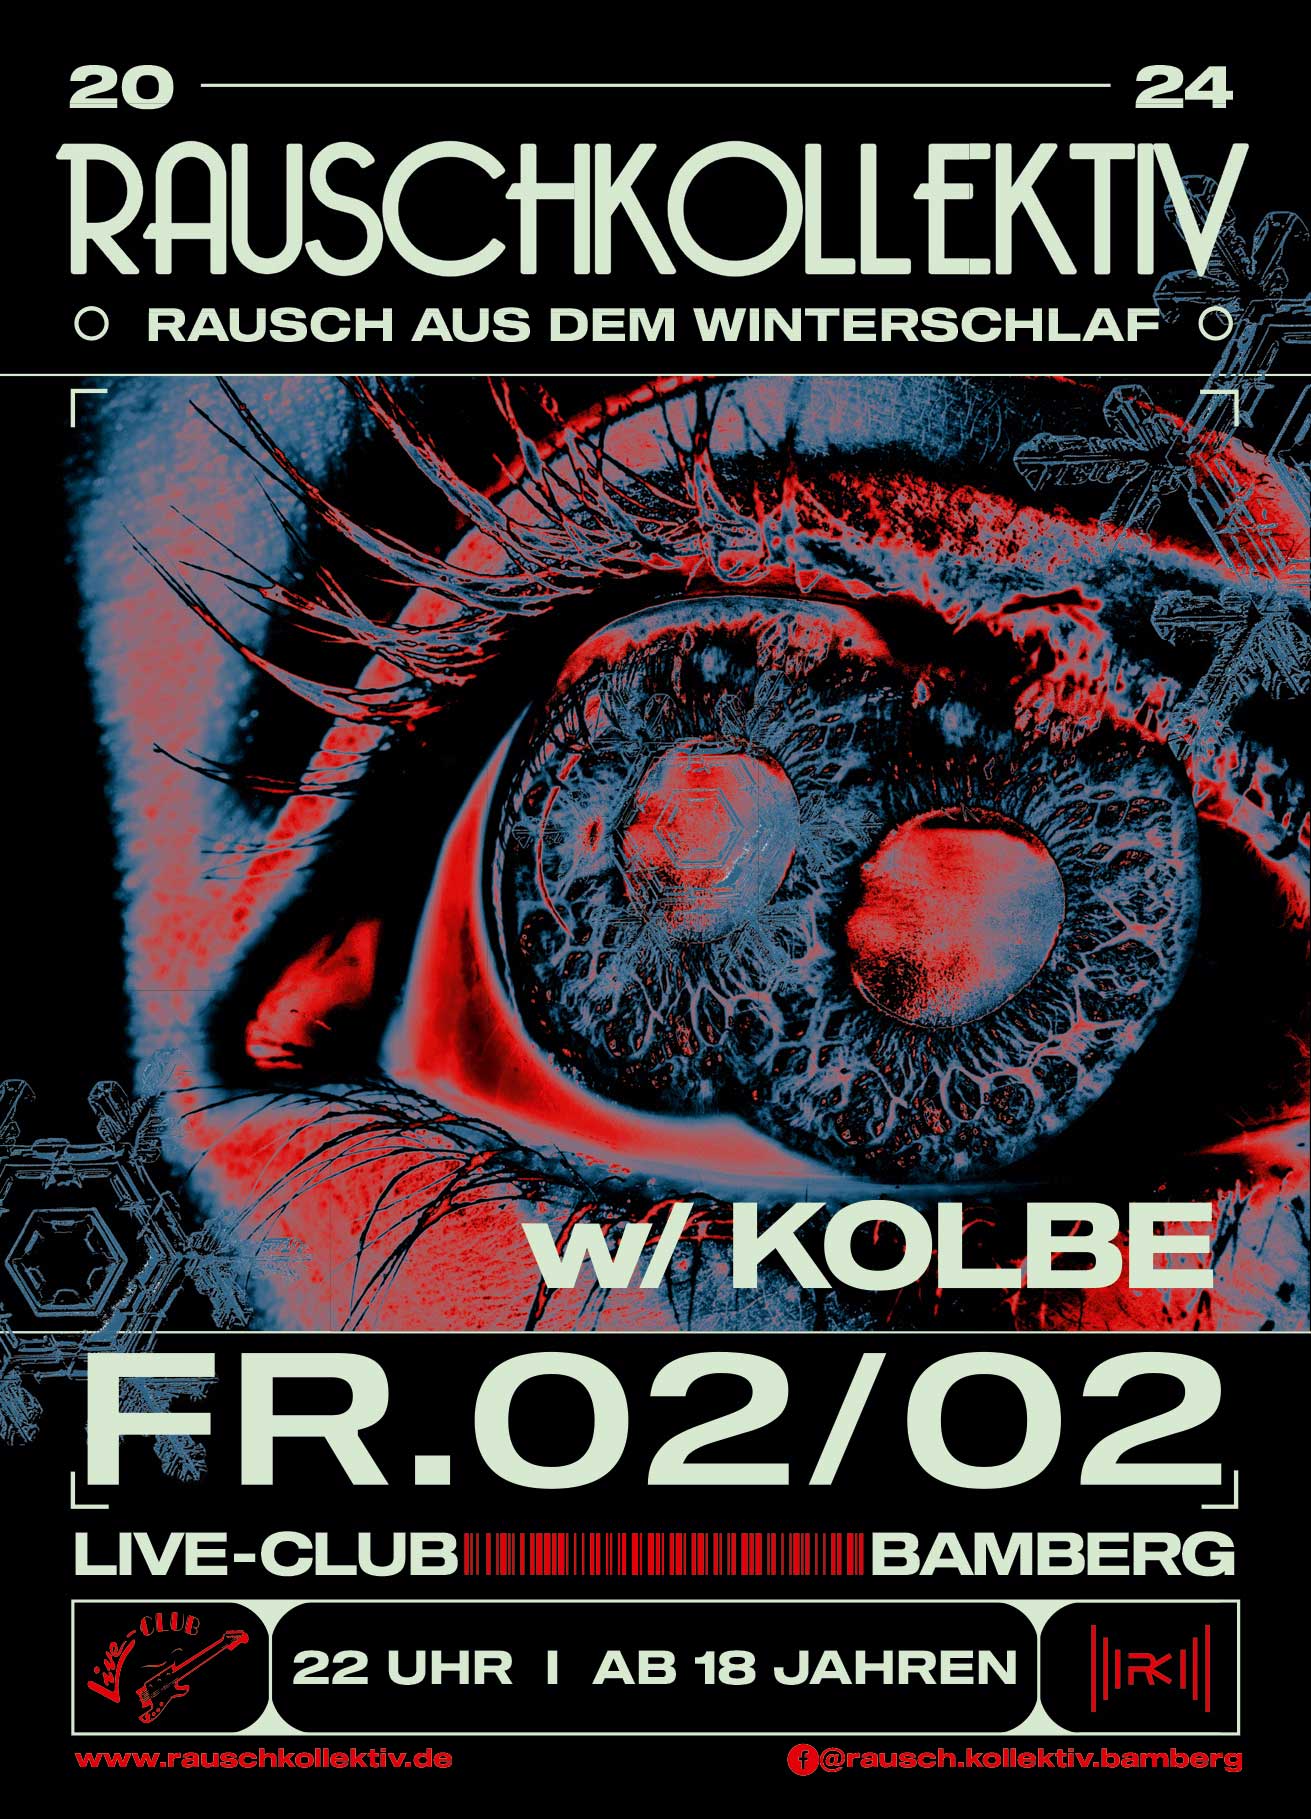 02. Feb 24: Rauschkollektiv - Rausch aus dem Winterschlaf mit Kolbe im Live-Club